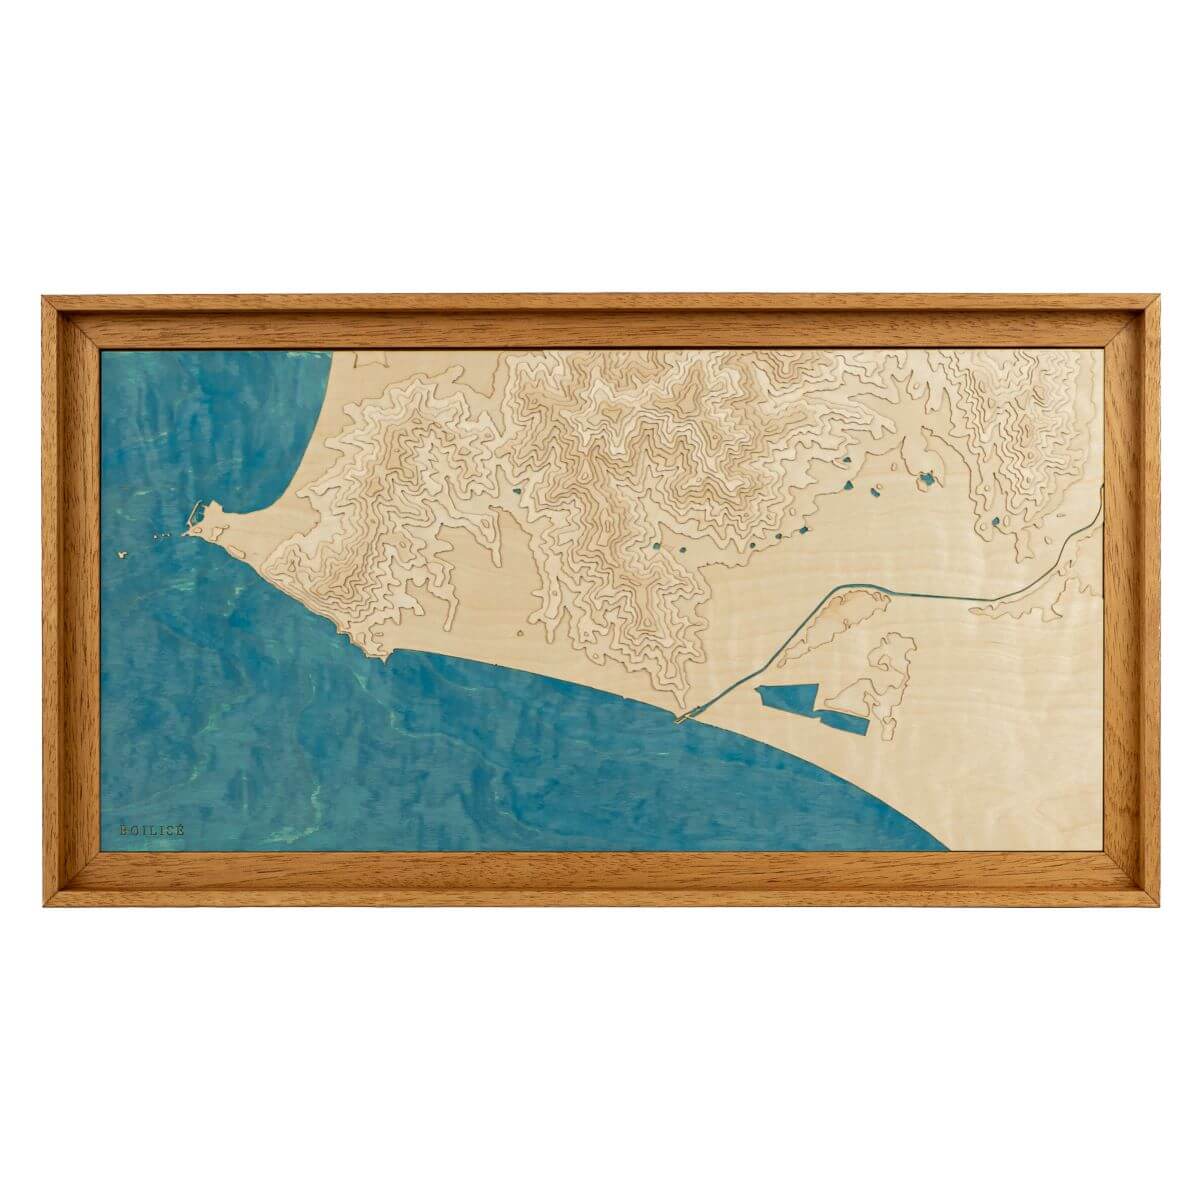 Tableau de Castiglione della Pescaia en Italie en relief avec une eau bleue marine